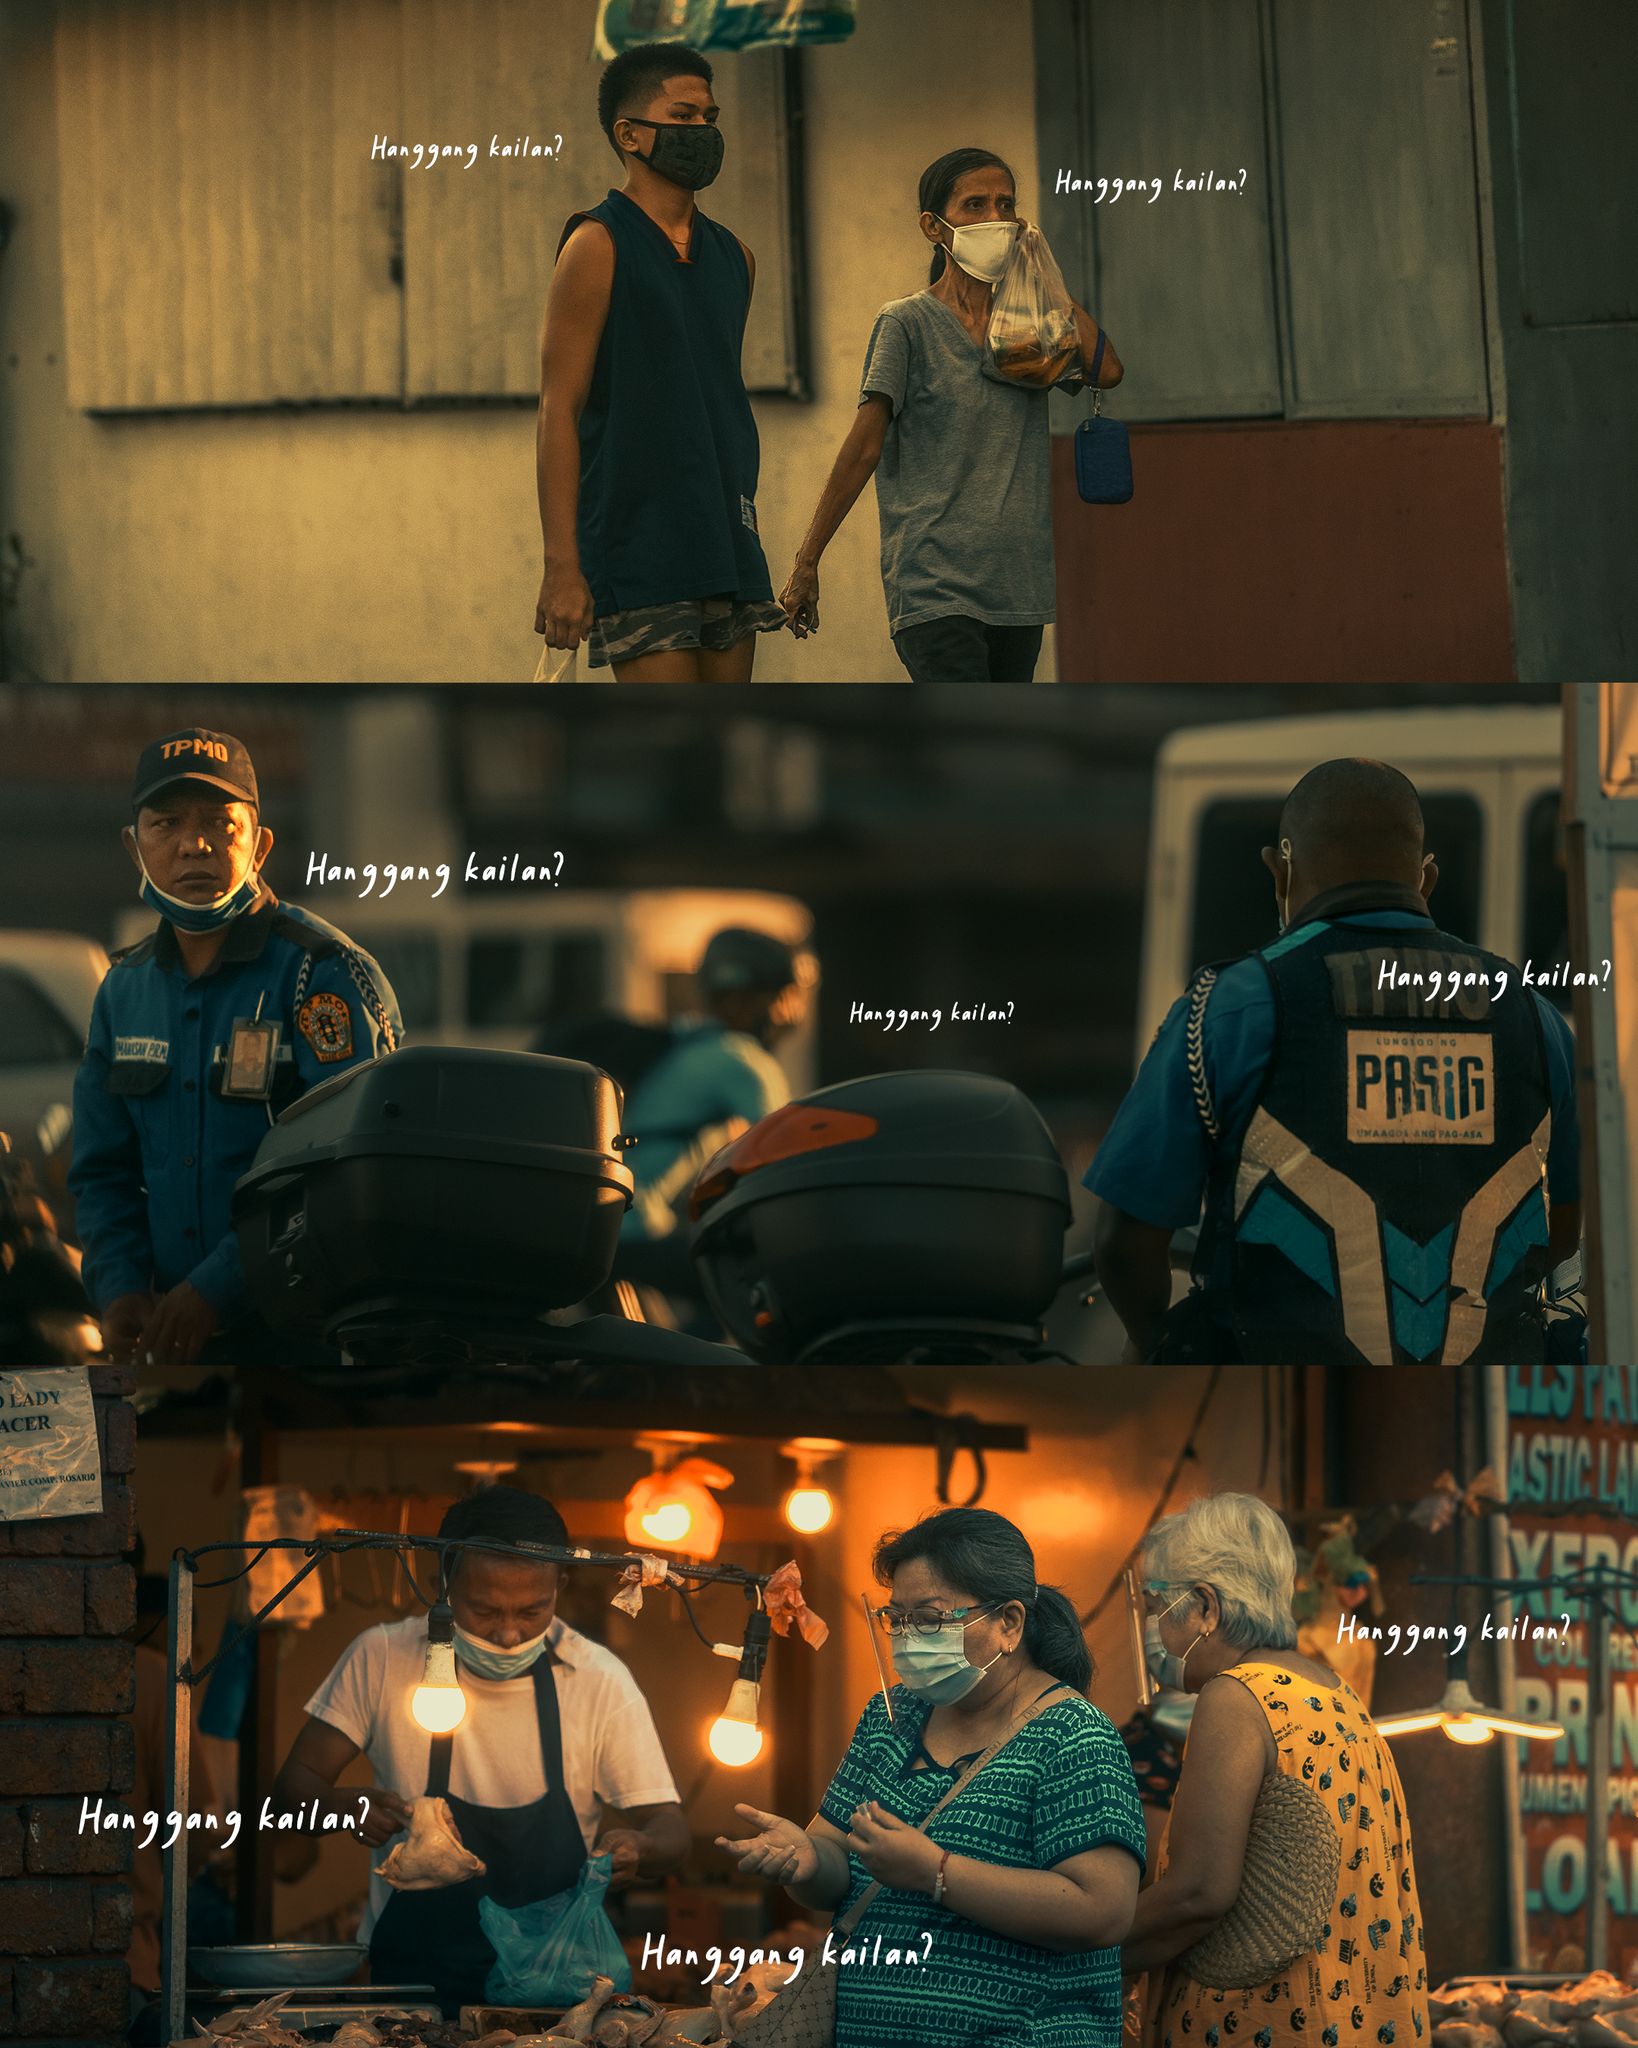 1106 香港电影级街拍摄影私房照影片照片调色PS&LR预设大合集 benj BUNDLE OMNIBUS